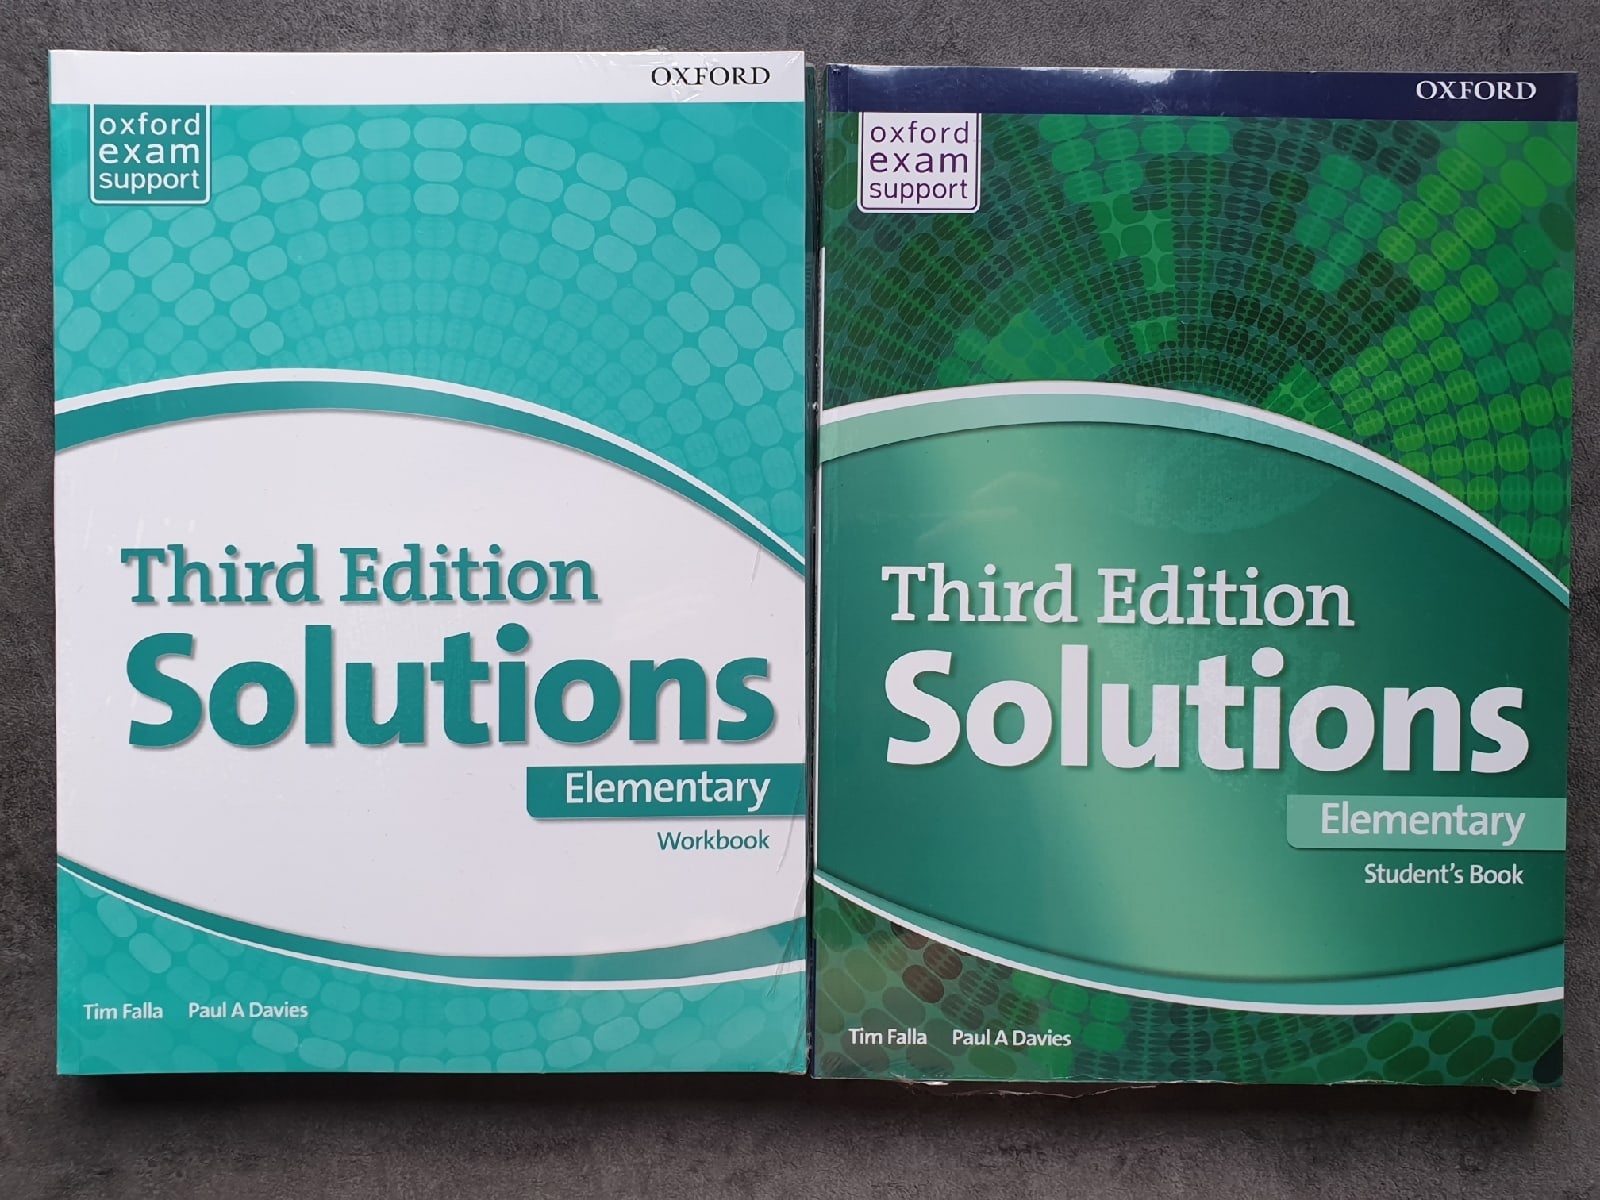 Solutions elementary. Учебник solutions Elementary. Solutions Elementary: Workbook. Third Edition solutions. Учебник third Edition solutions Elementary.